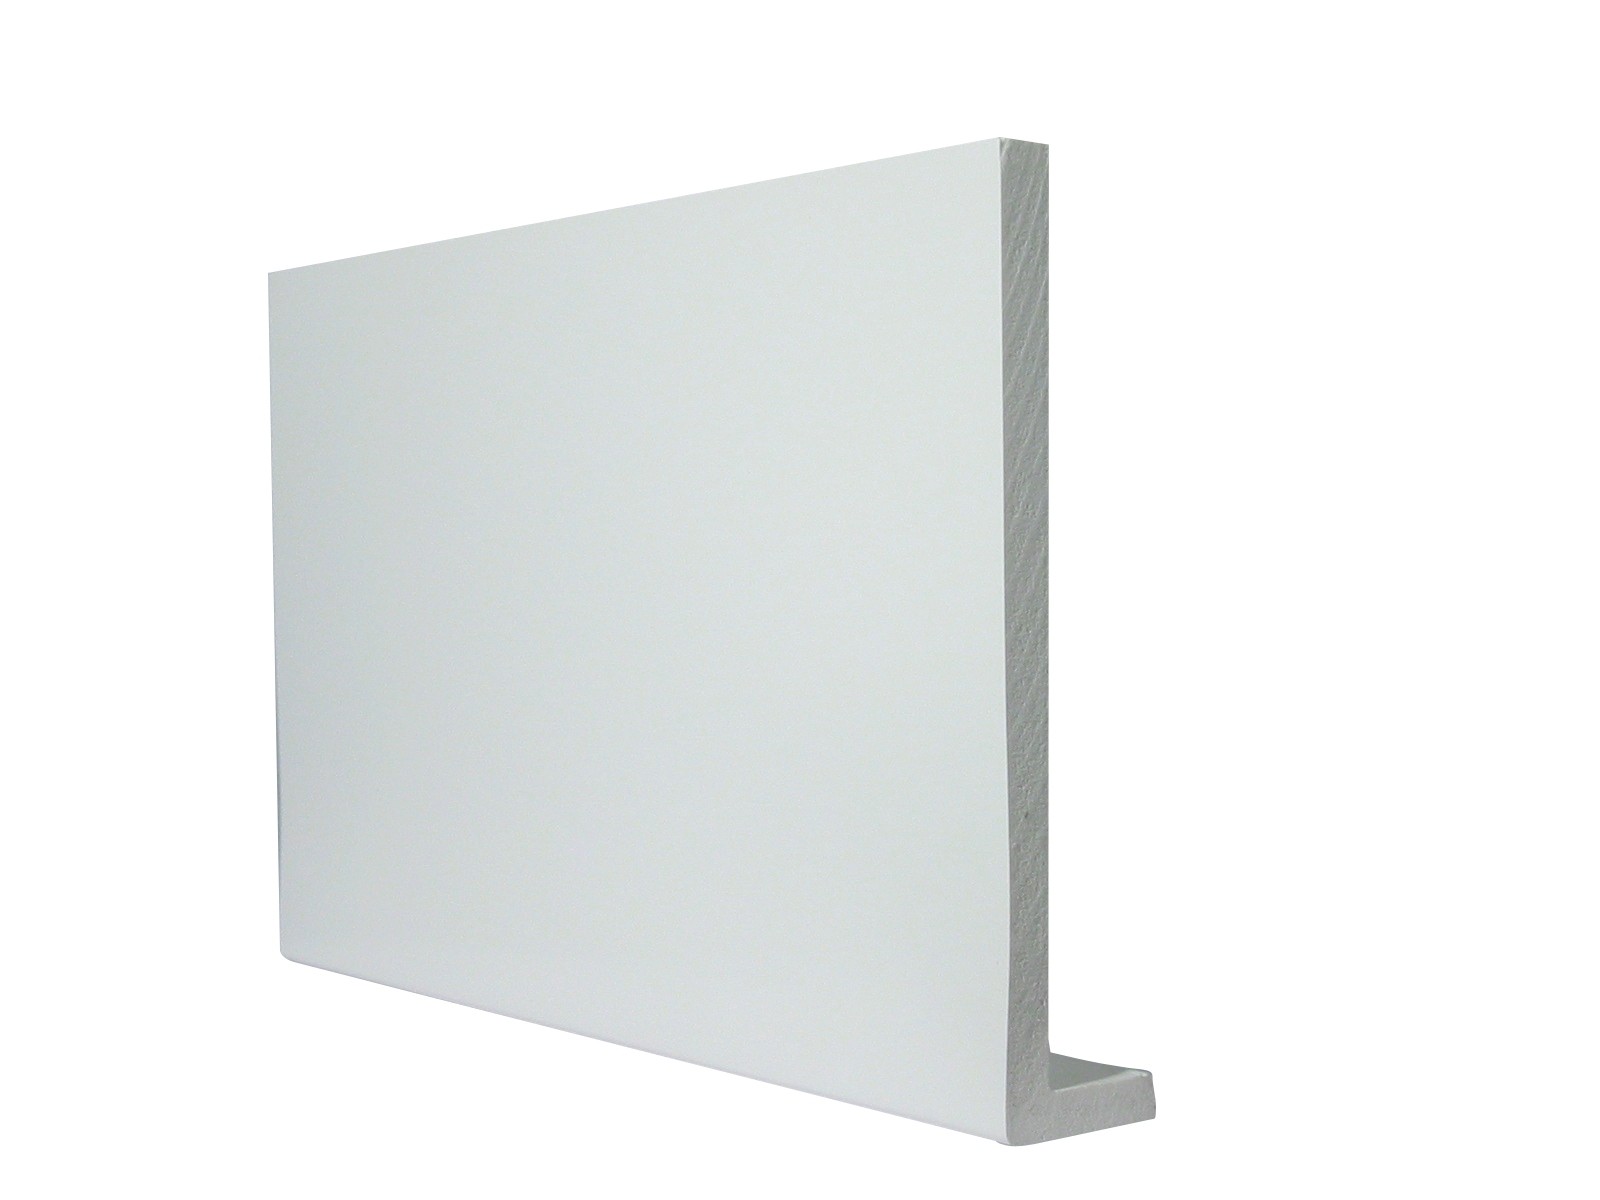 9mm Square Capping Board/Cover Fascia White